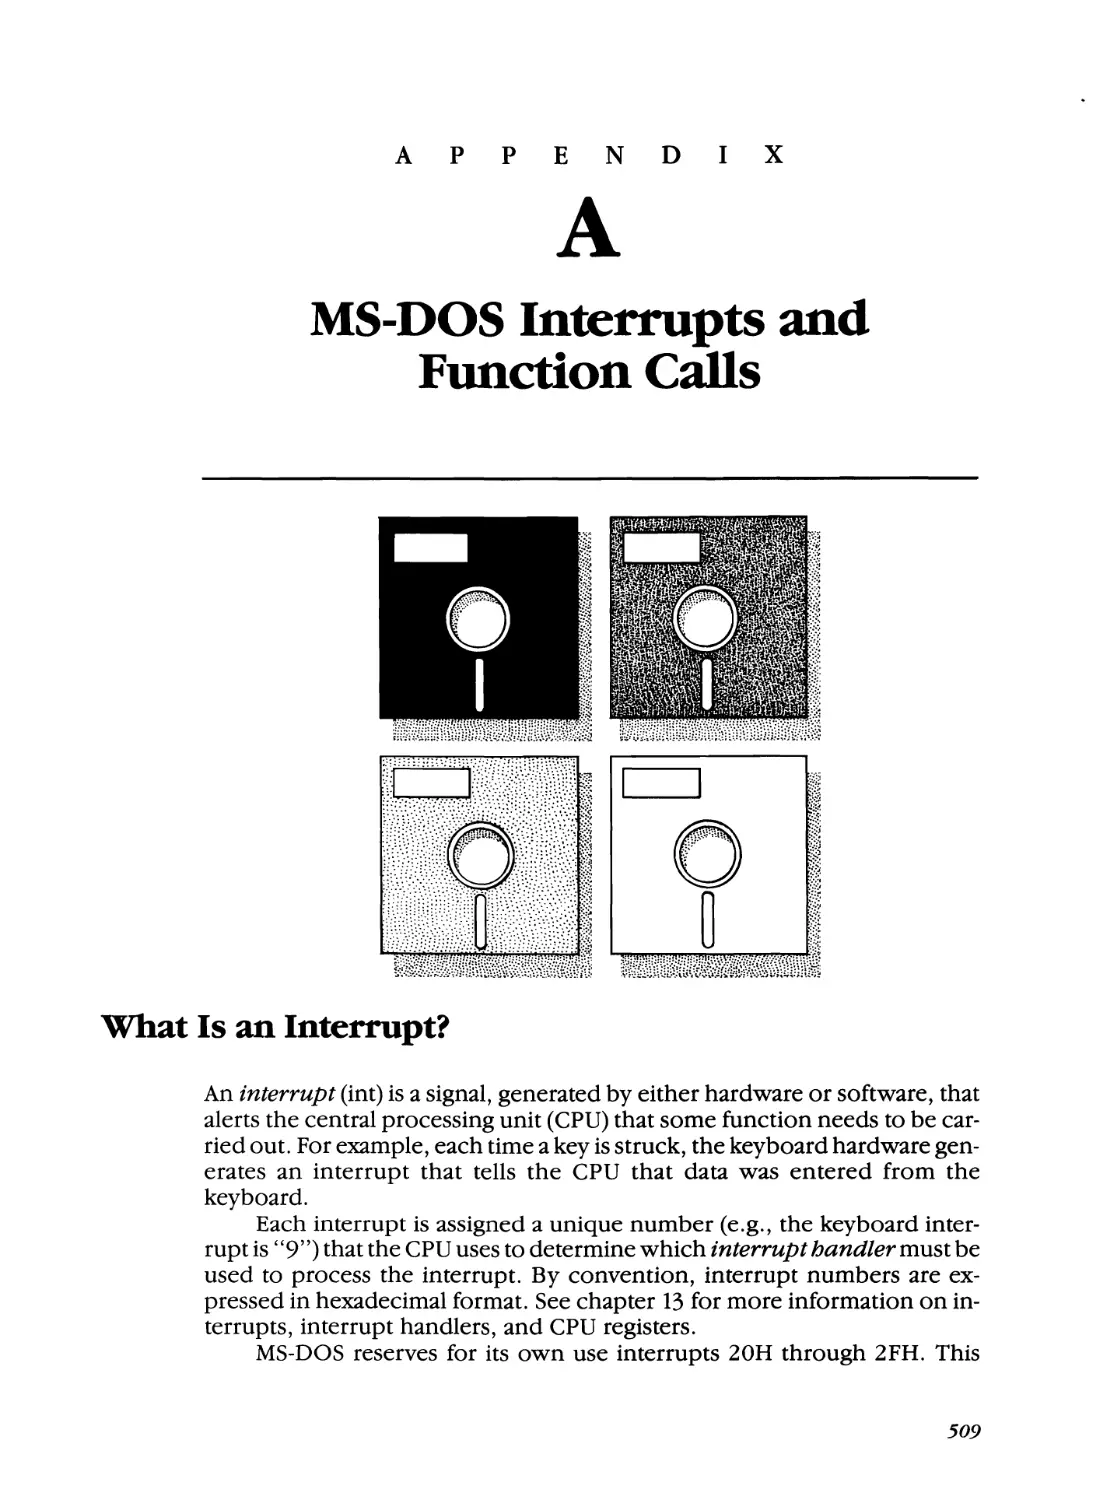 Appendix A - MS-DOS Interrupts and Function Calls